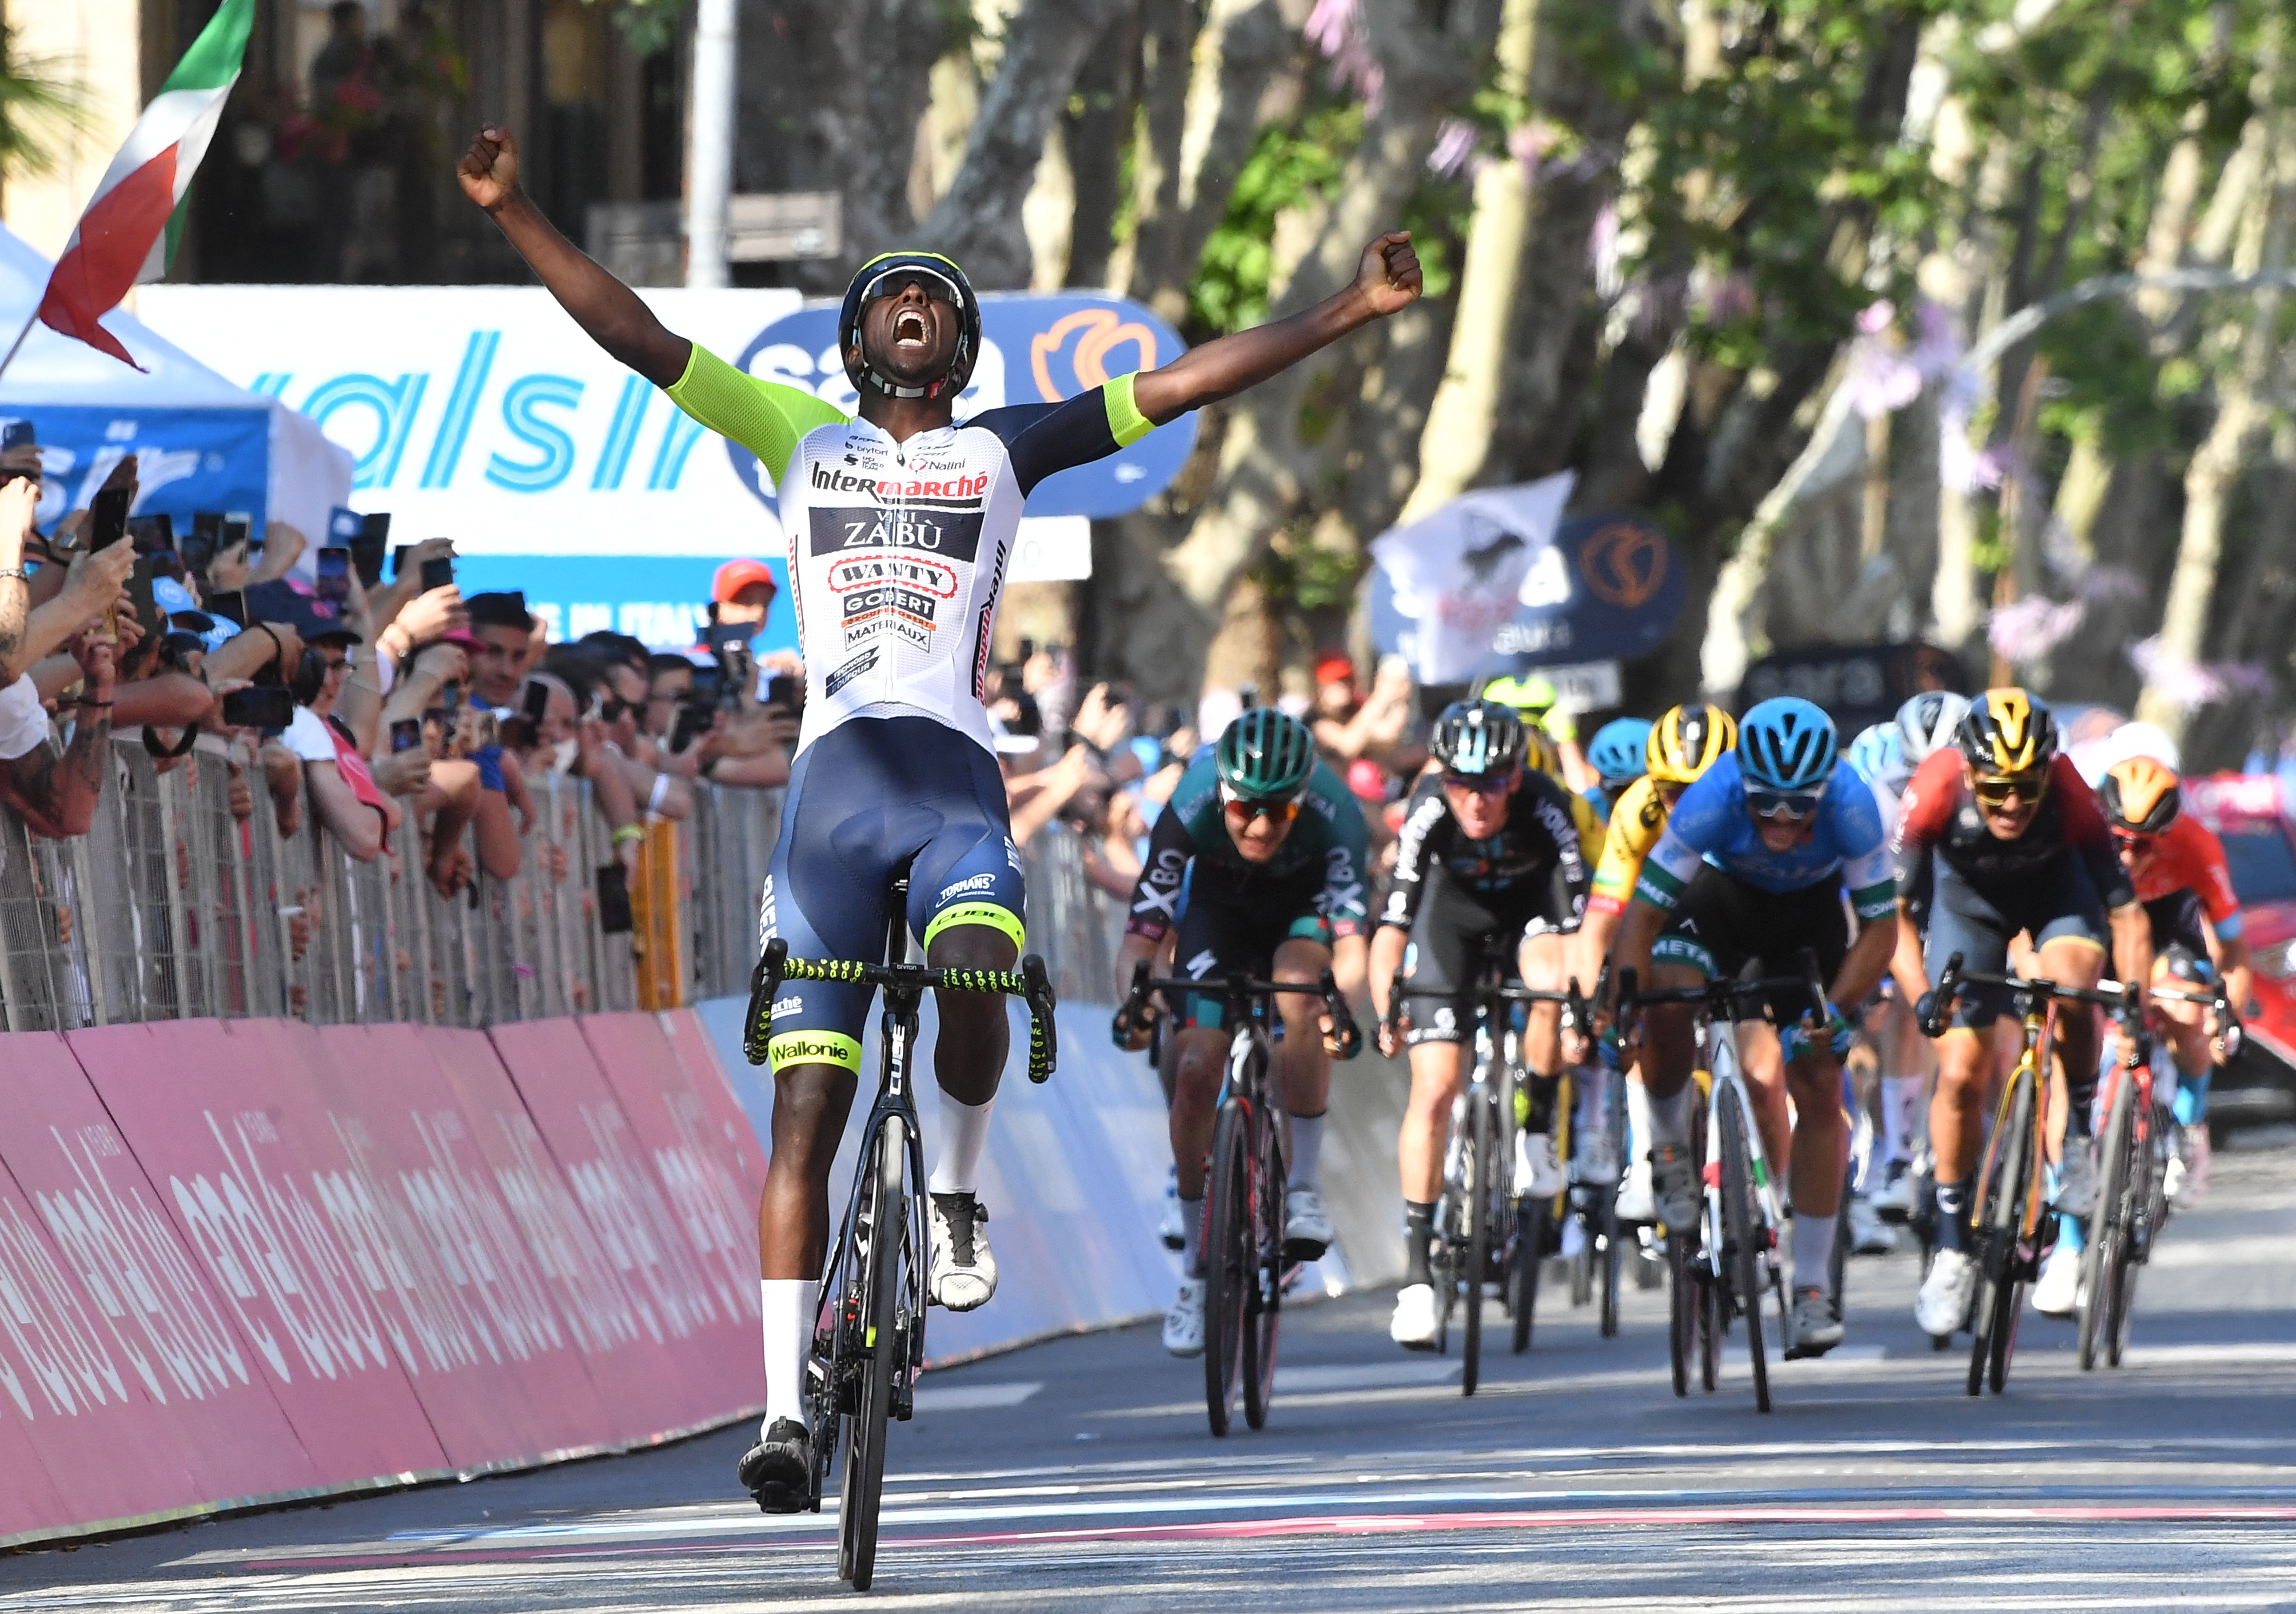 El corredor africano hizo historia al conseguir el triunfo de la etapa 10 del Giro de Italia. Foto: REUTERS/Jennifer Lorenzini